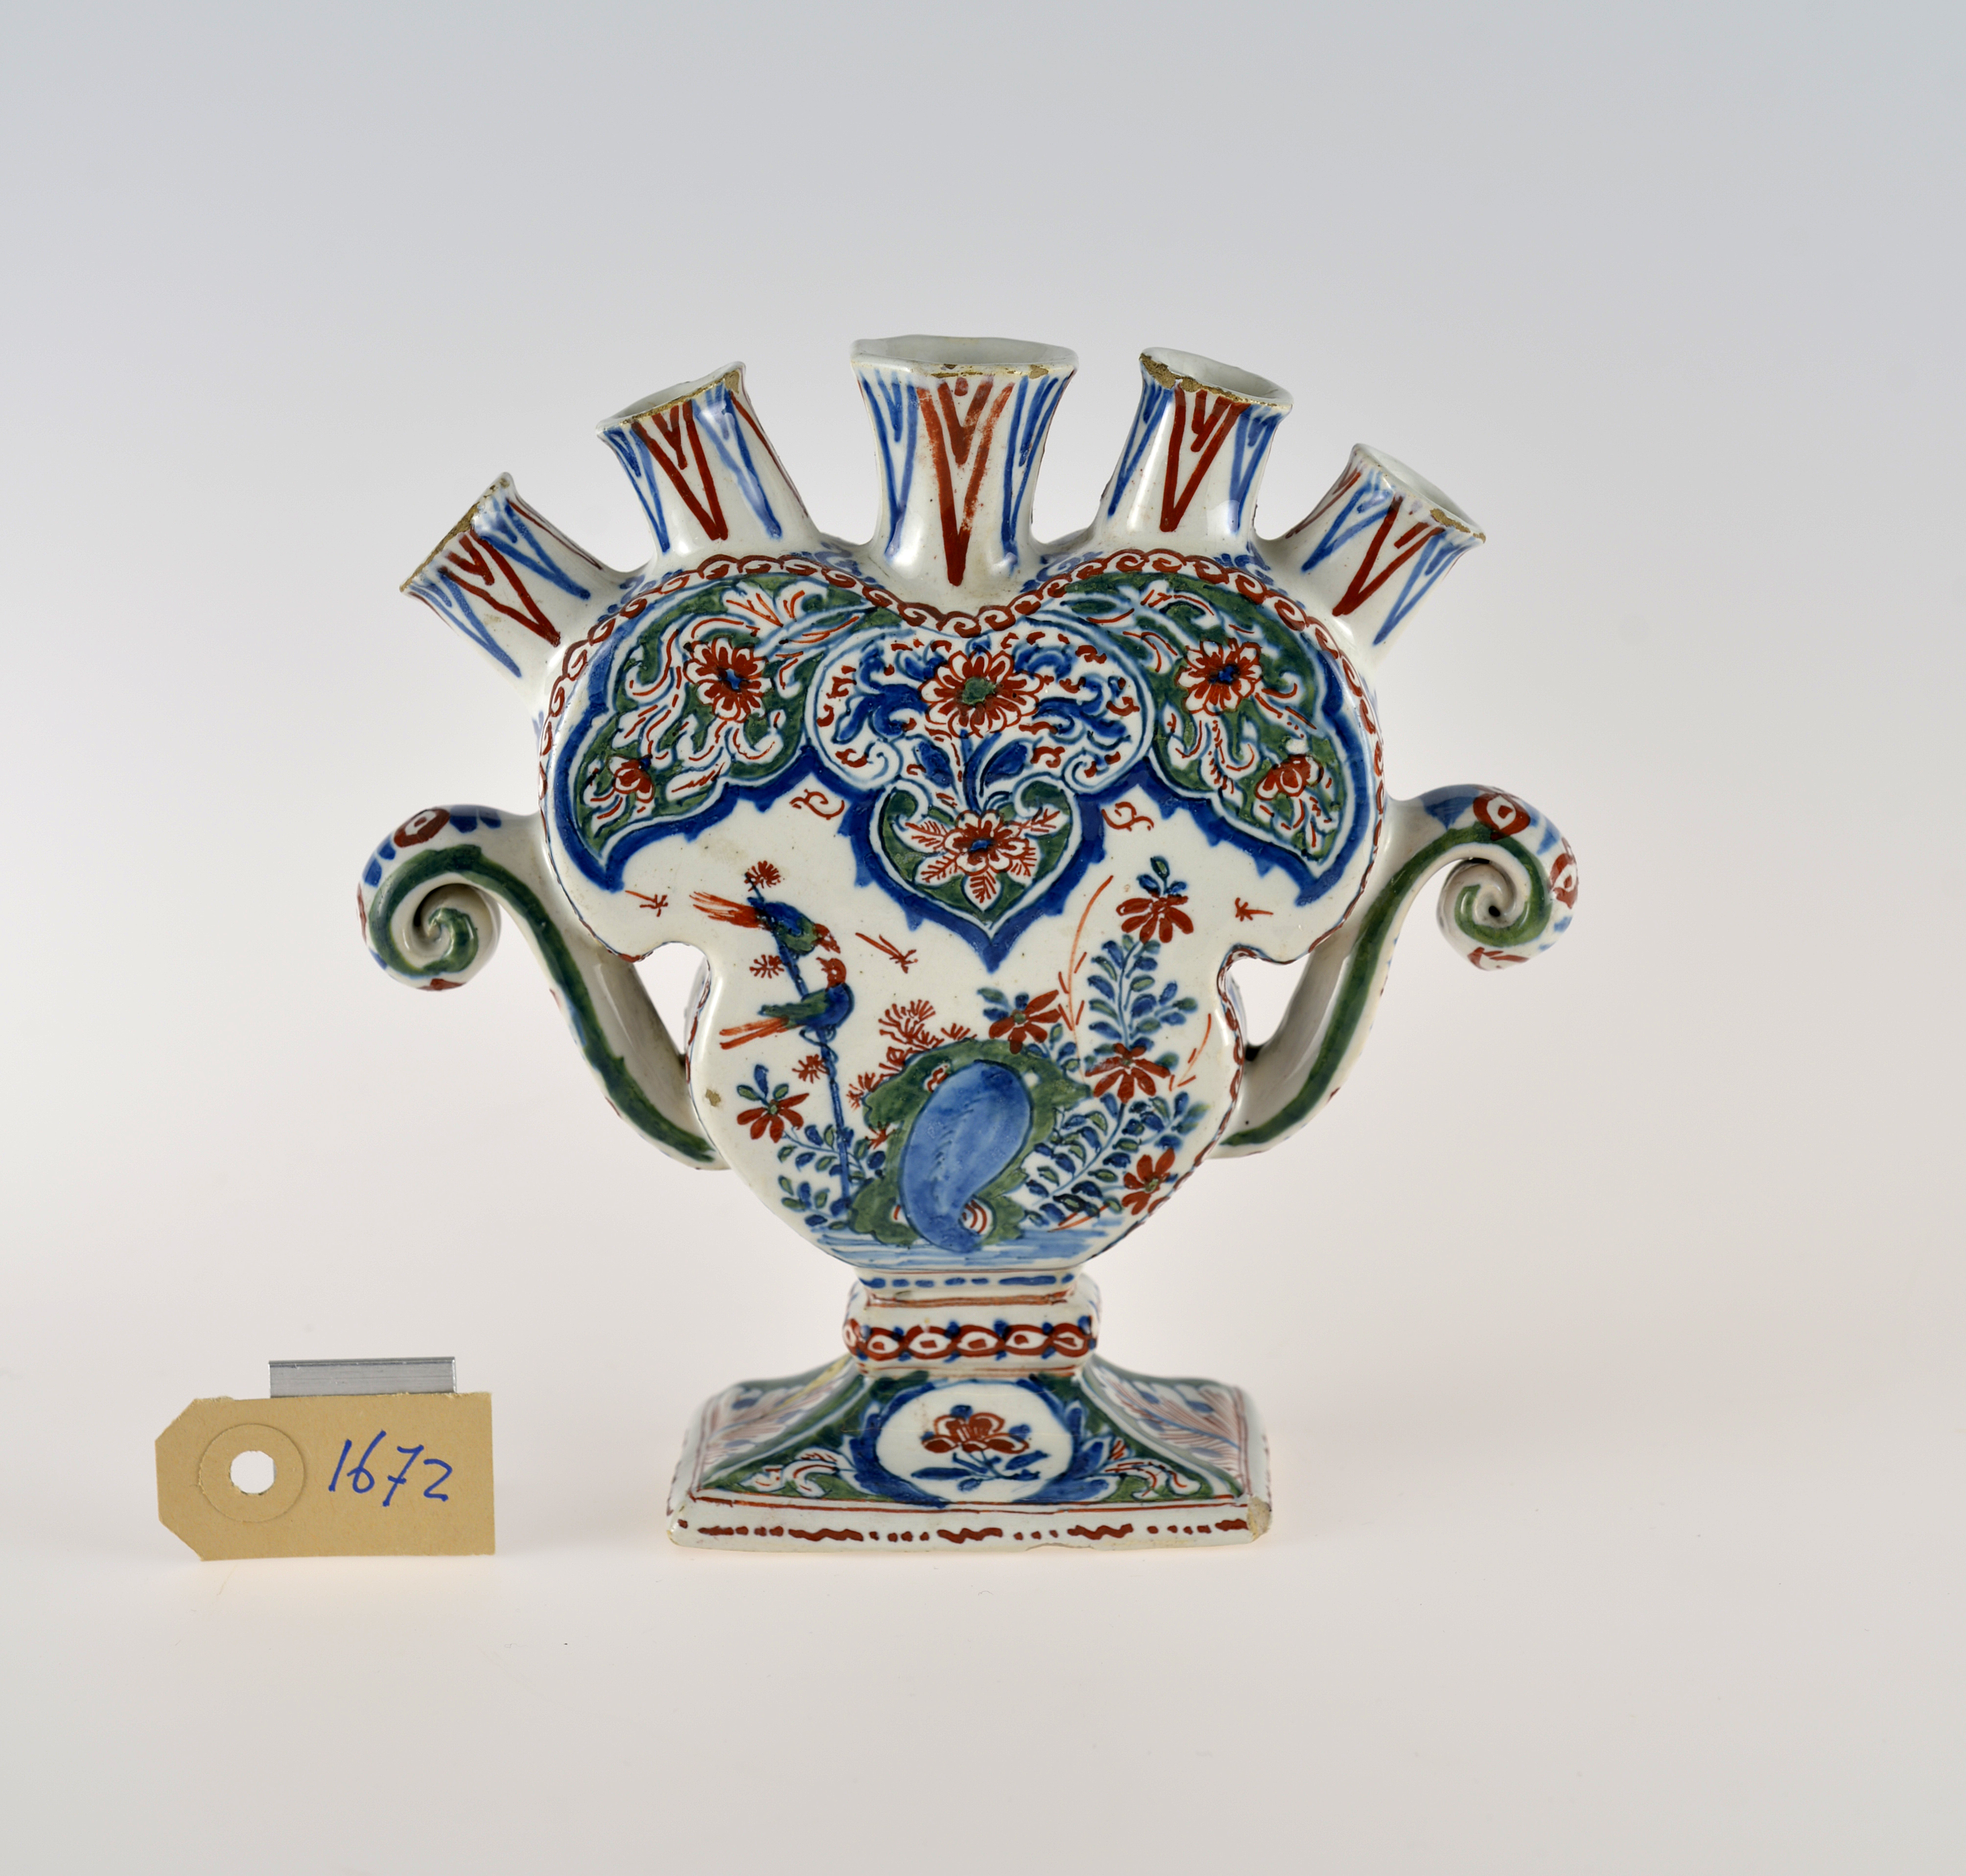 Unidentified Dutch Artist, Tulip Vase, Date unknown. Collection of Huis Van Gijn, Dordrecht